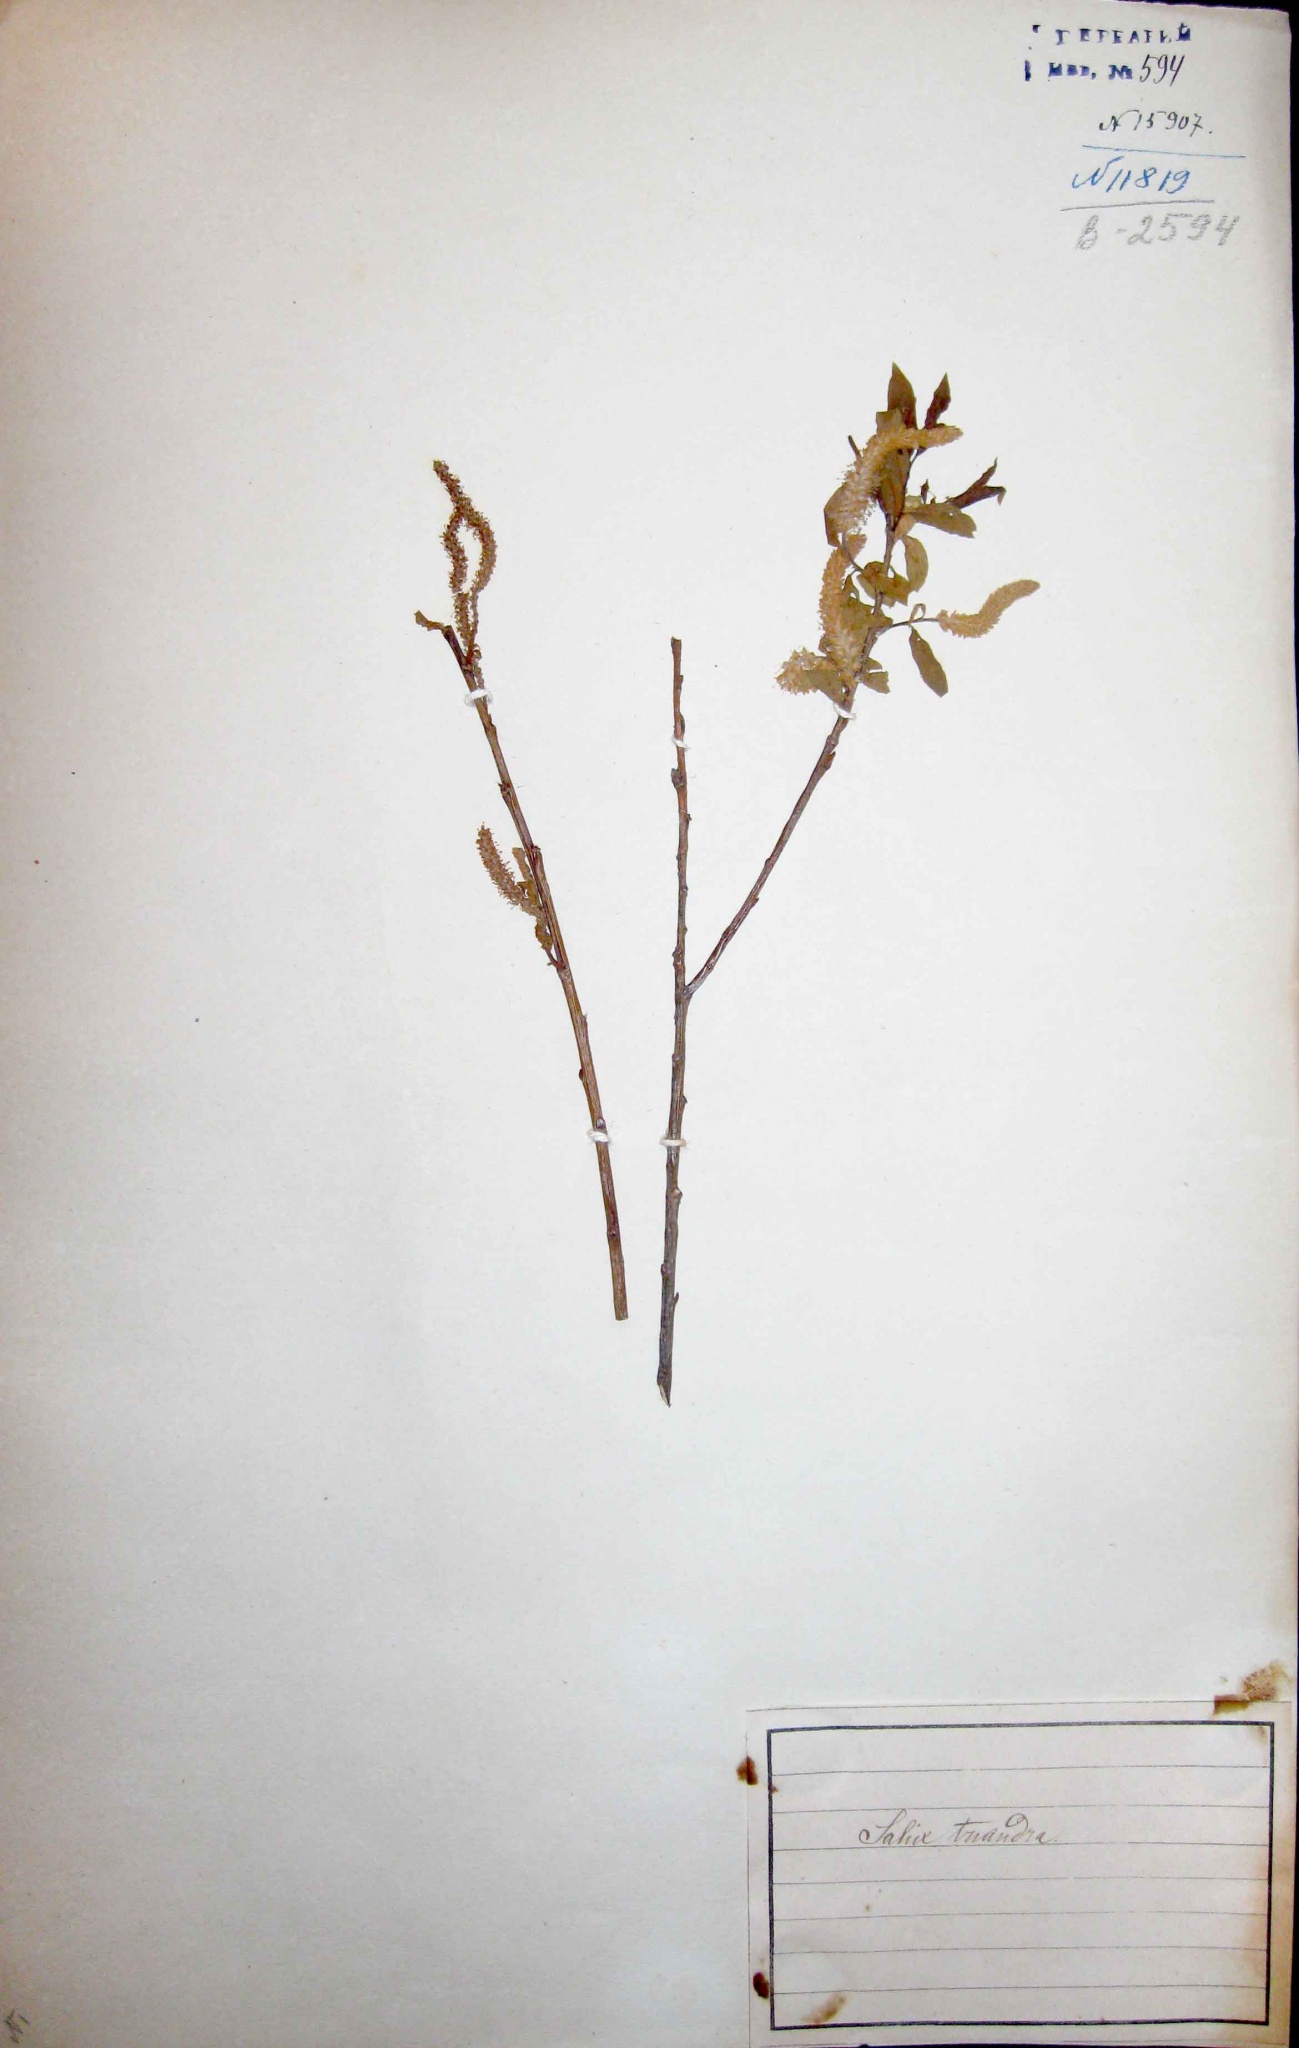 Ива трехтычинковая (Salix triandra) — один из самых широко распространенных кустарниковых видов ив.